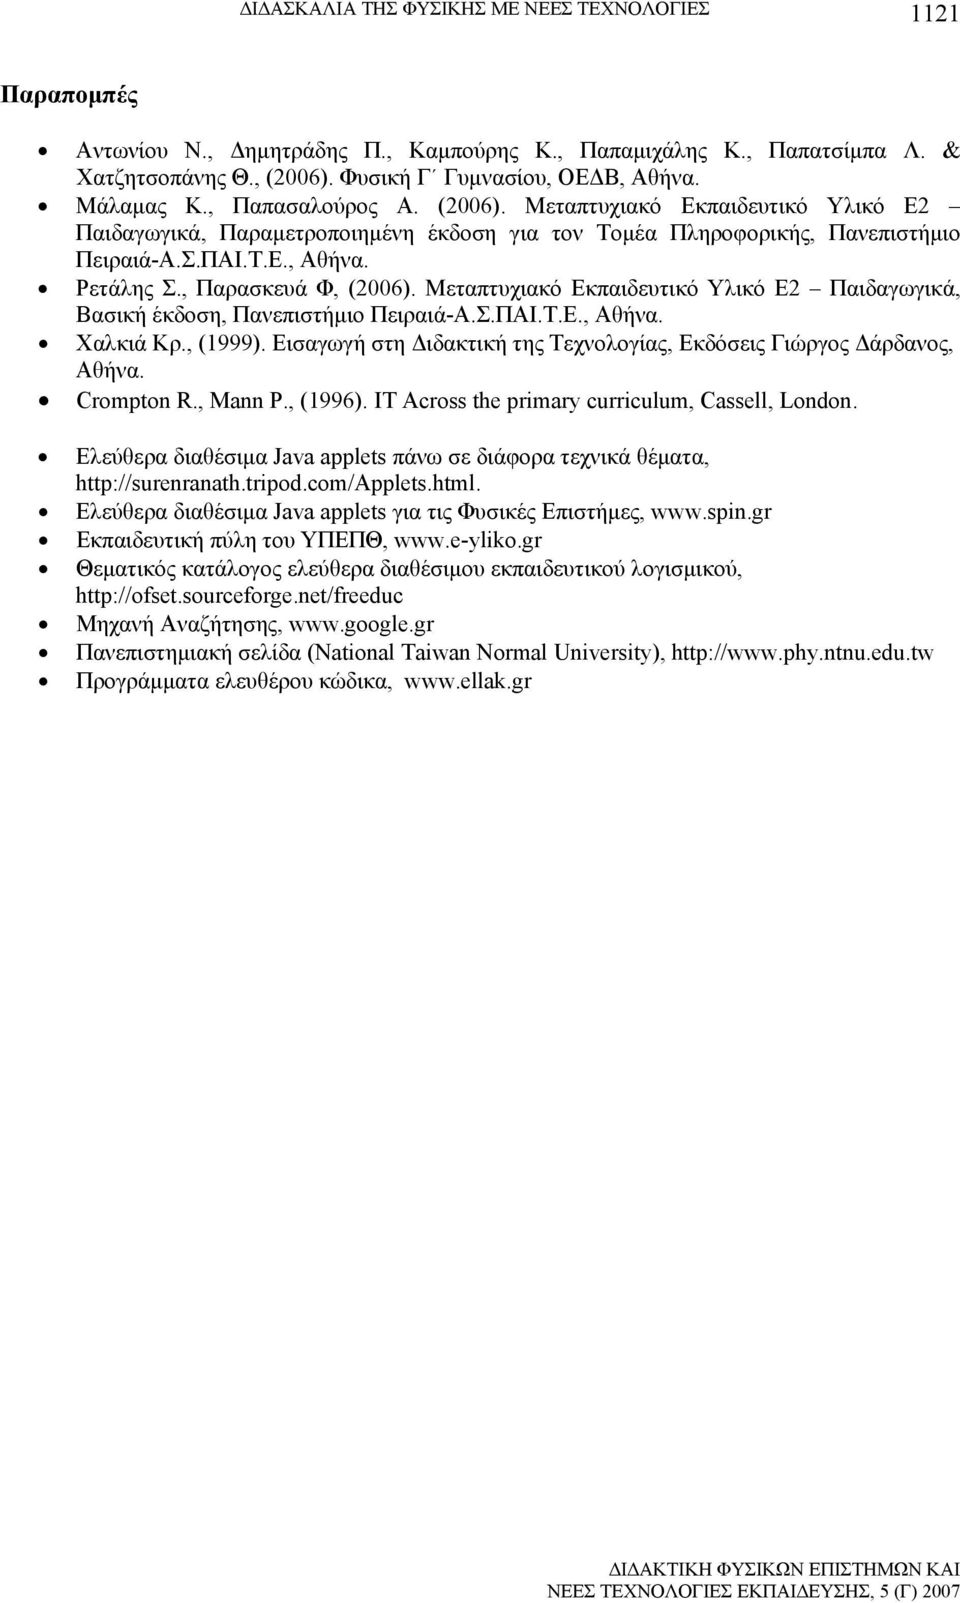 , Παρασκευά Φ, (2006). Μεταπτυχιακό Εκπαιδευτικό Υλικό Ε2 Παιδαγωγικά, Βασική έκδοση, Πανεπιστήμιο Πειραιά-Α.Σ.ΠΑΙ.Τ.Ε., Αθήνα. Χαλκιά Κρ., (1999).